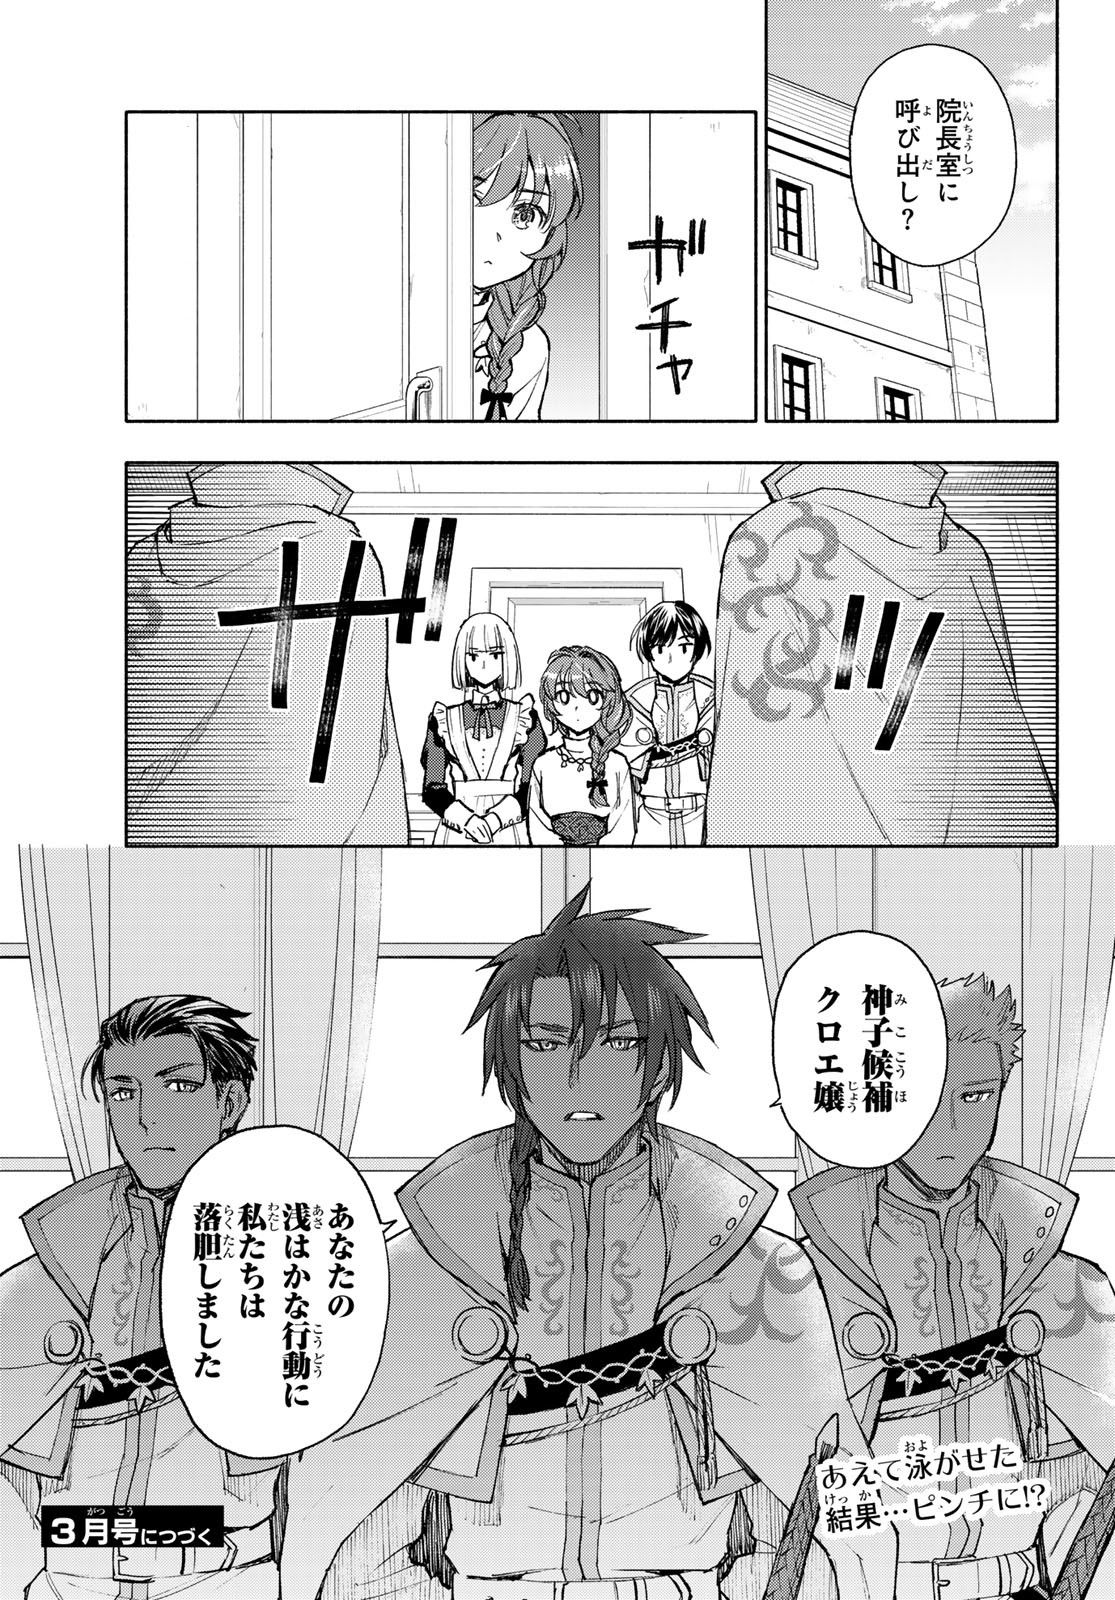 Seijo ni Uso wa Tsuujinai - Chapter 10 - Page 25